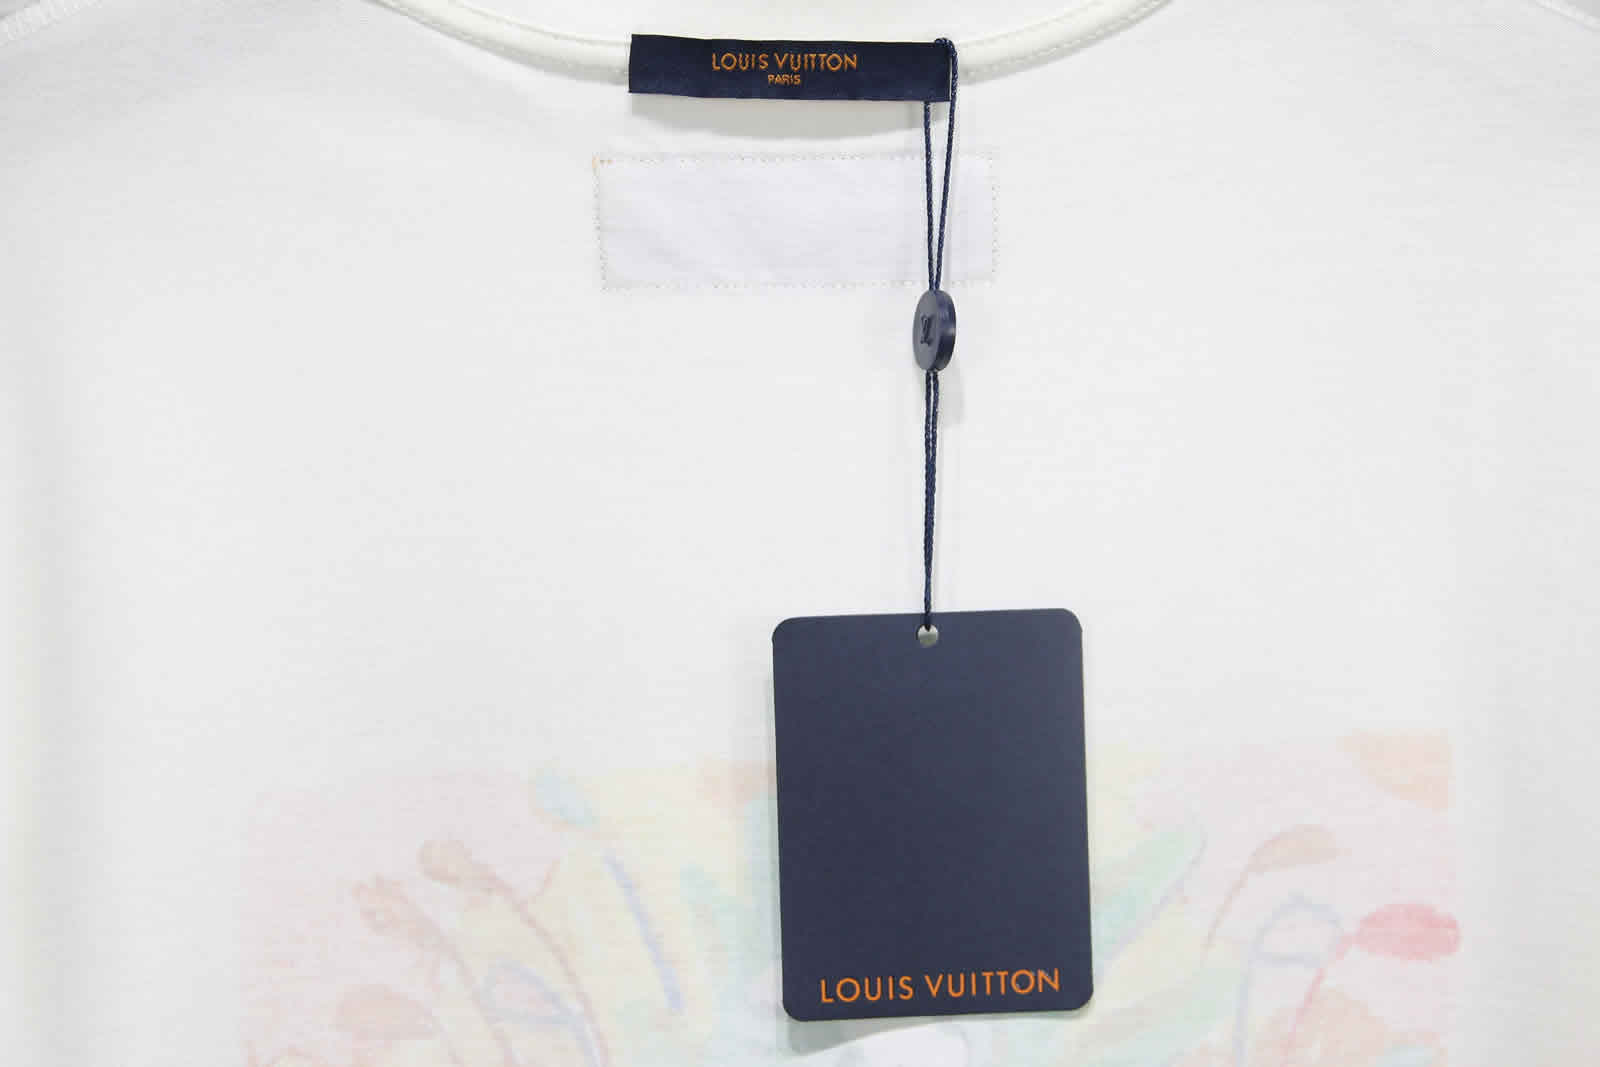 Louis Vuitton Graffiti Monster T Shirt 12 - kickbulk.cc